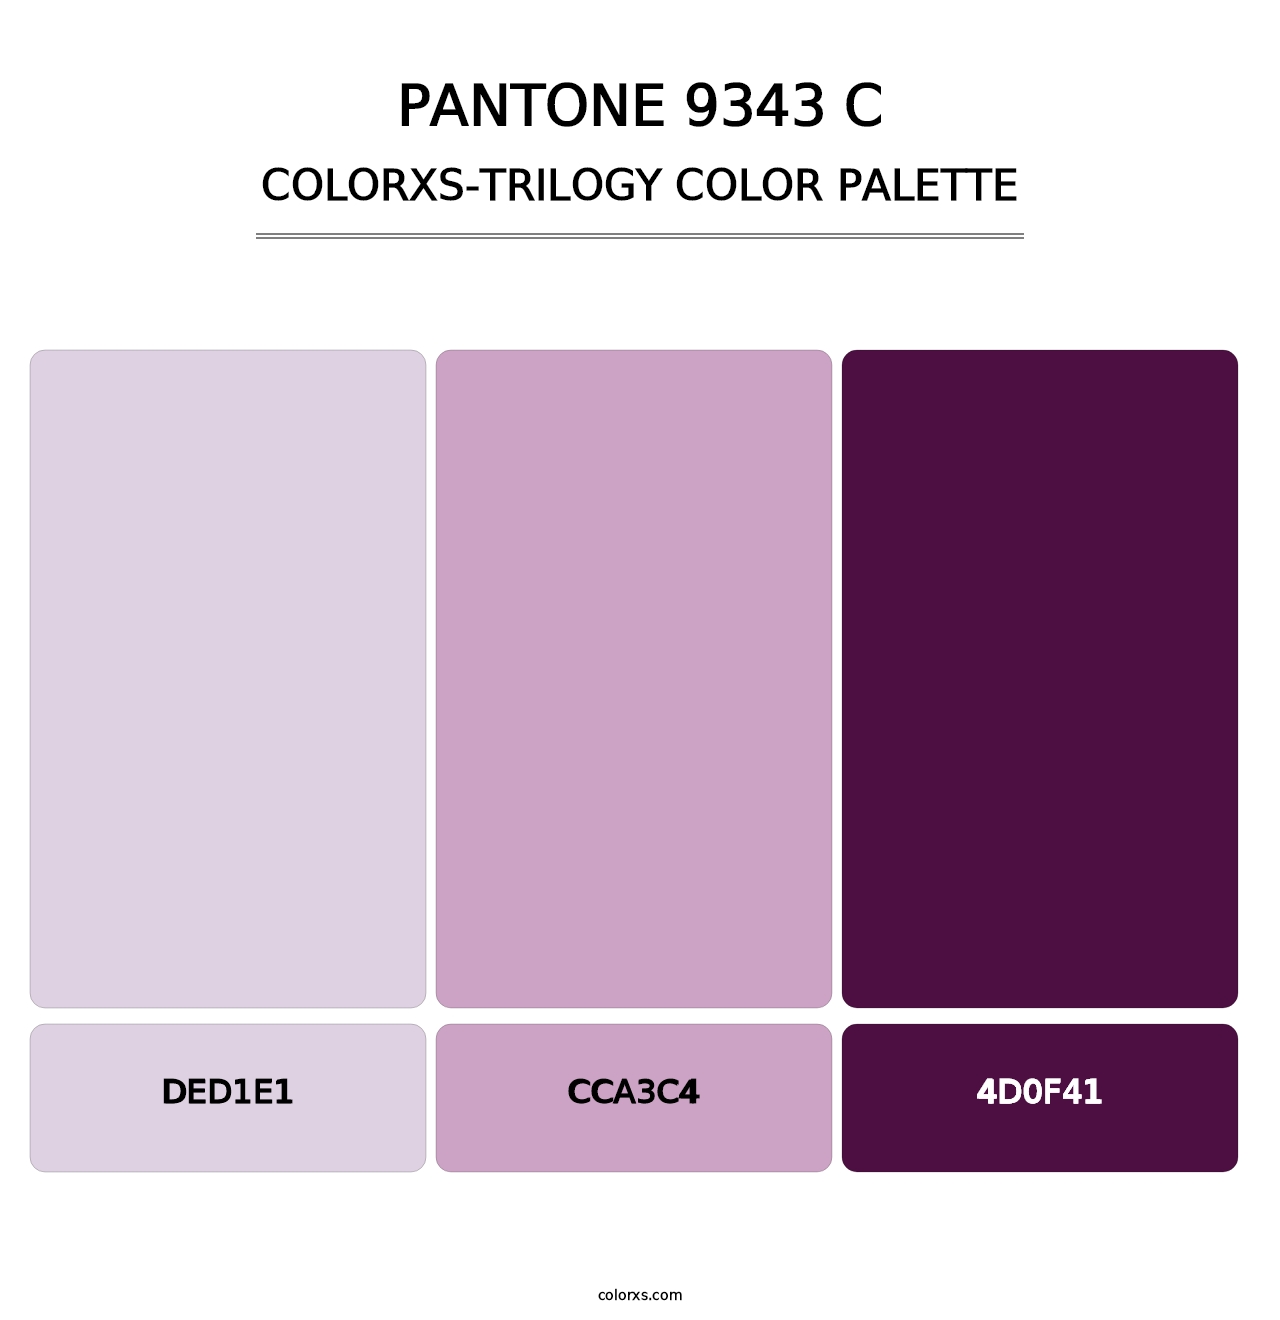 PANTONE 9343 C - Colorxs Trilogy Palette